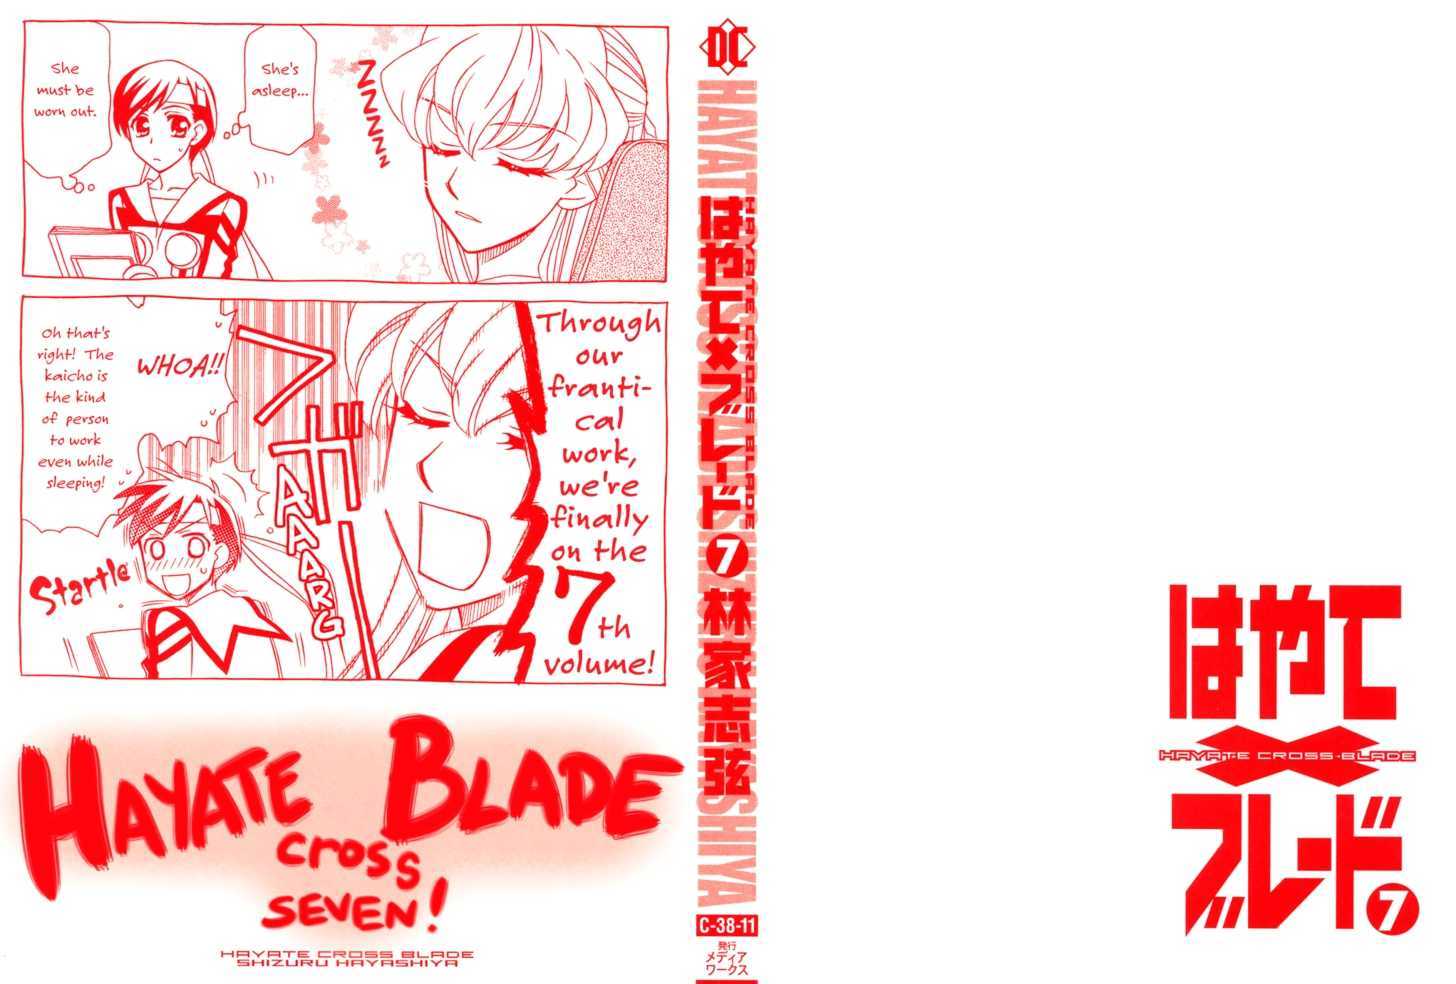 Hayate x Blade 37